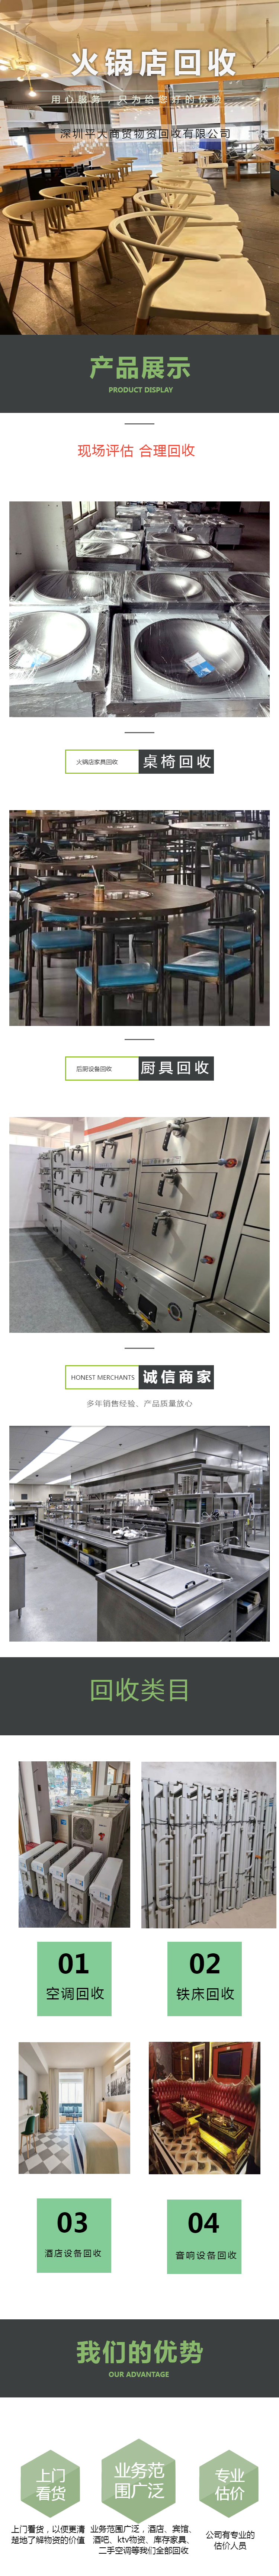 深圳火锅店回收 深圳酒楼餐厅设备回收